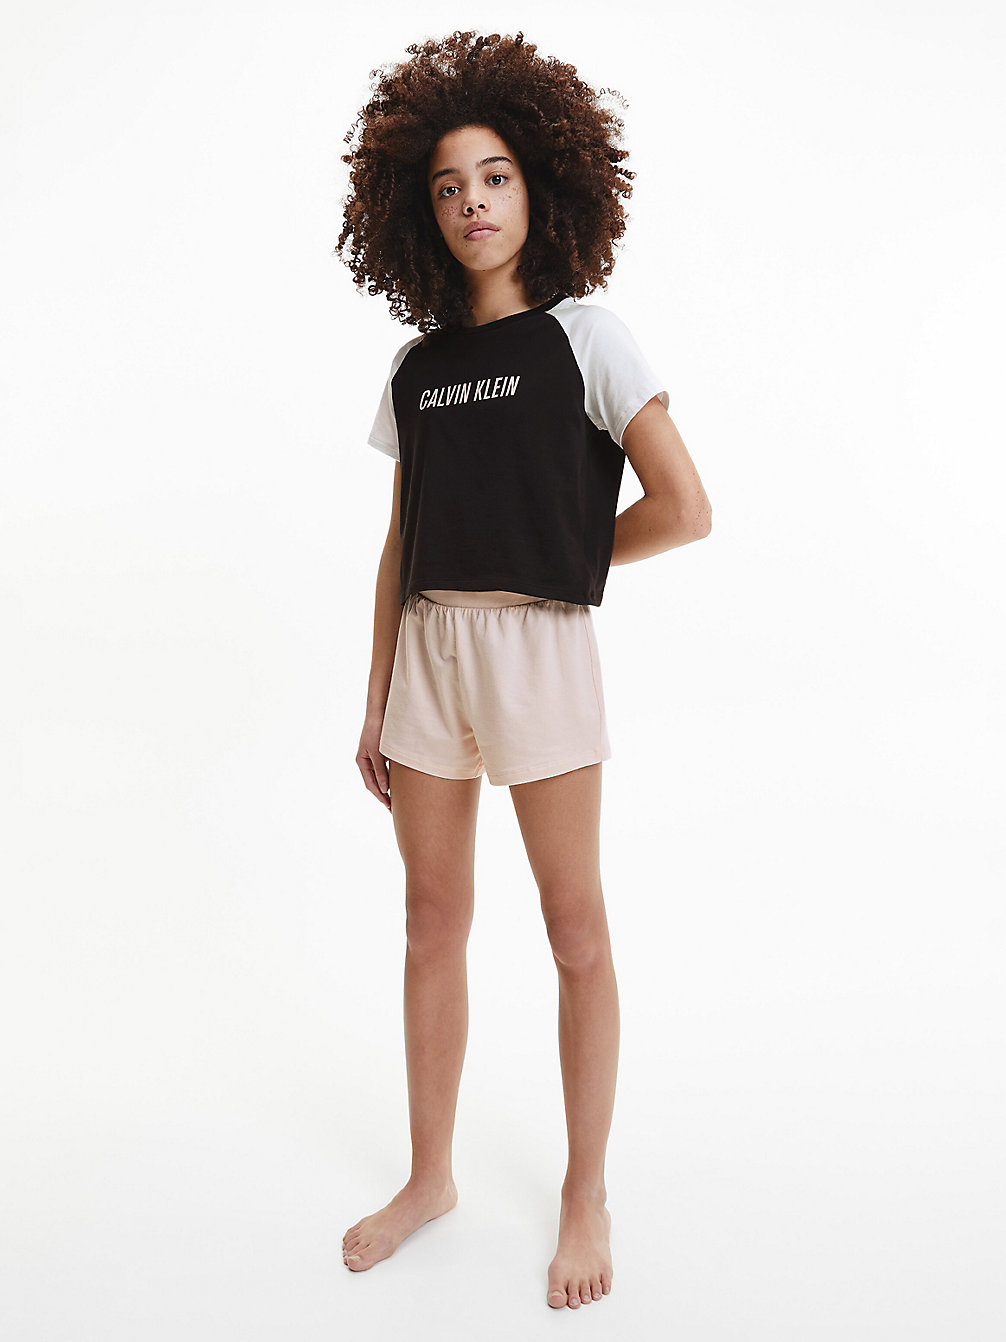 PRETTYPEACH/W/PVHBLACK Pyjama Met Short - Intense Power undefined girls Calvin Klein